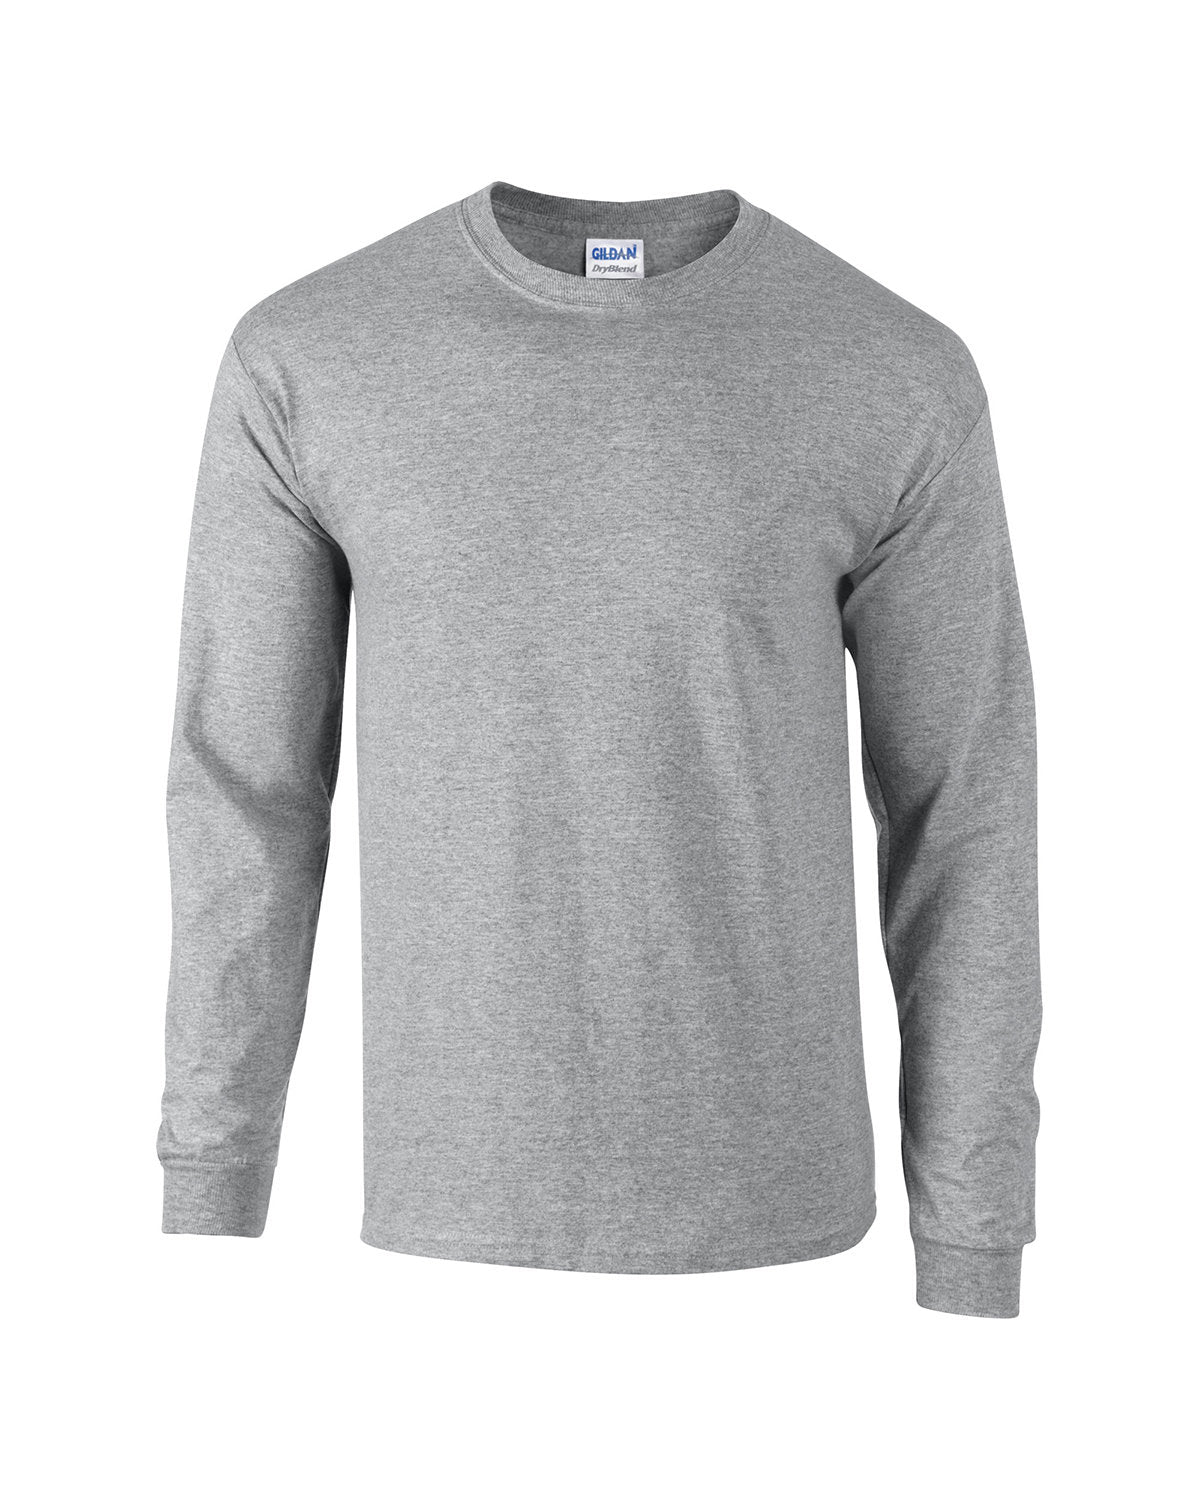 DryBlend Long Sleeve T-Shirt G840